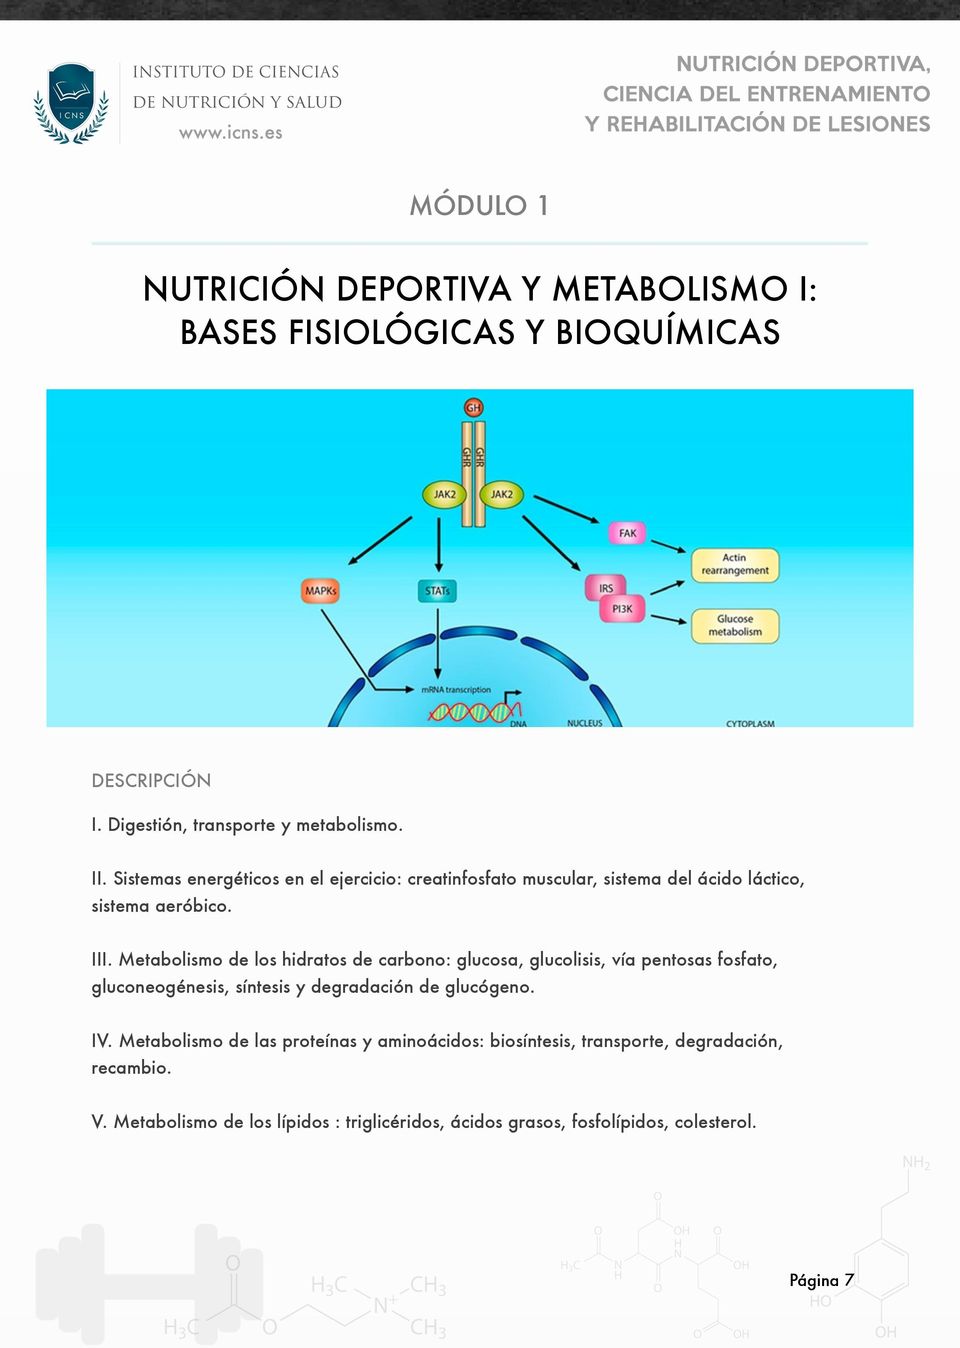 Metabolismo de los hidratos de carbono: glucosa, glucolisis, vía pentosas fosfato, gluconeogénesis, síntesis y degradación de glucógeno. IV.